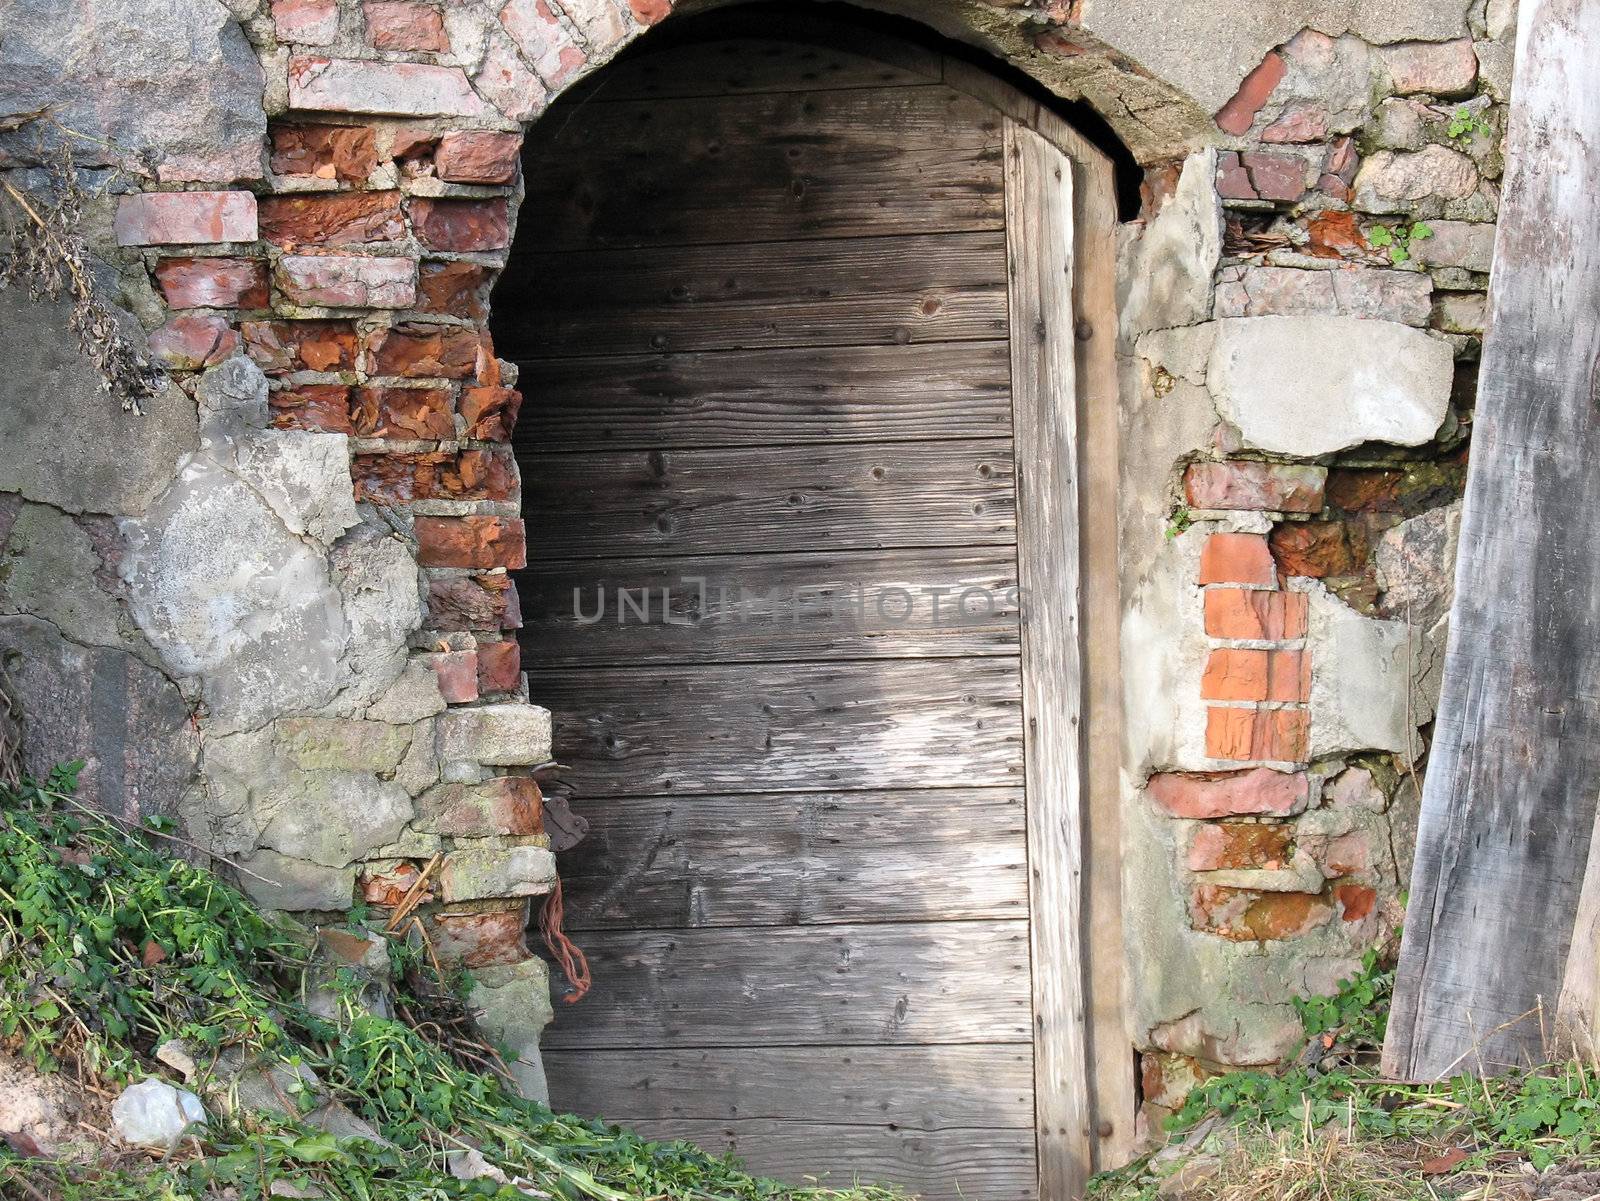 Door to old cellar builded of stones.